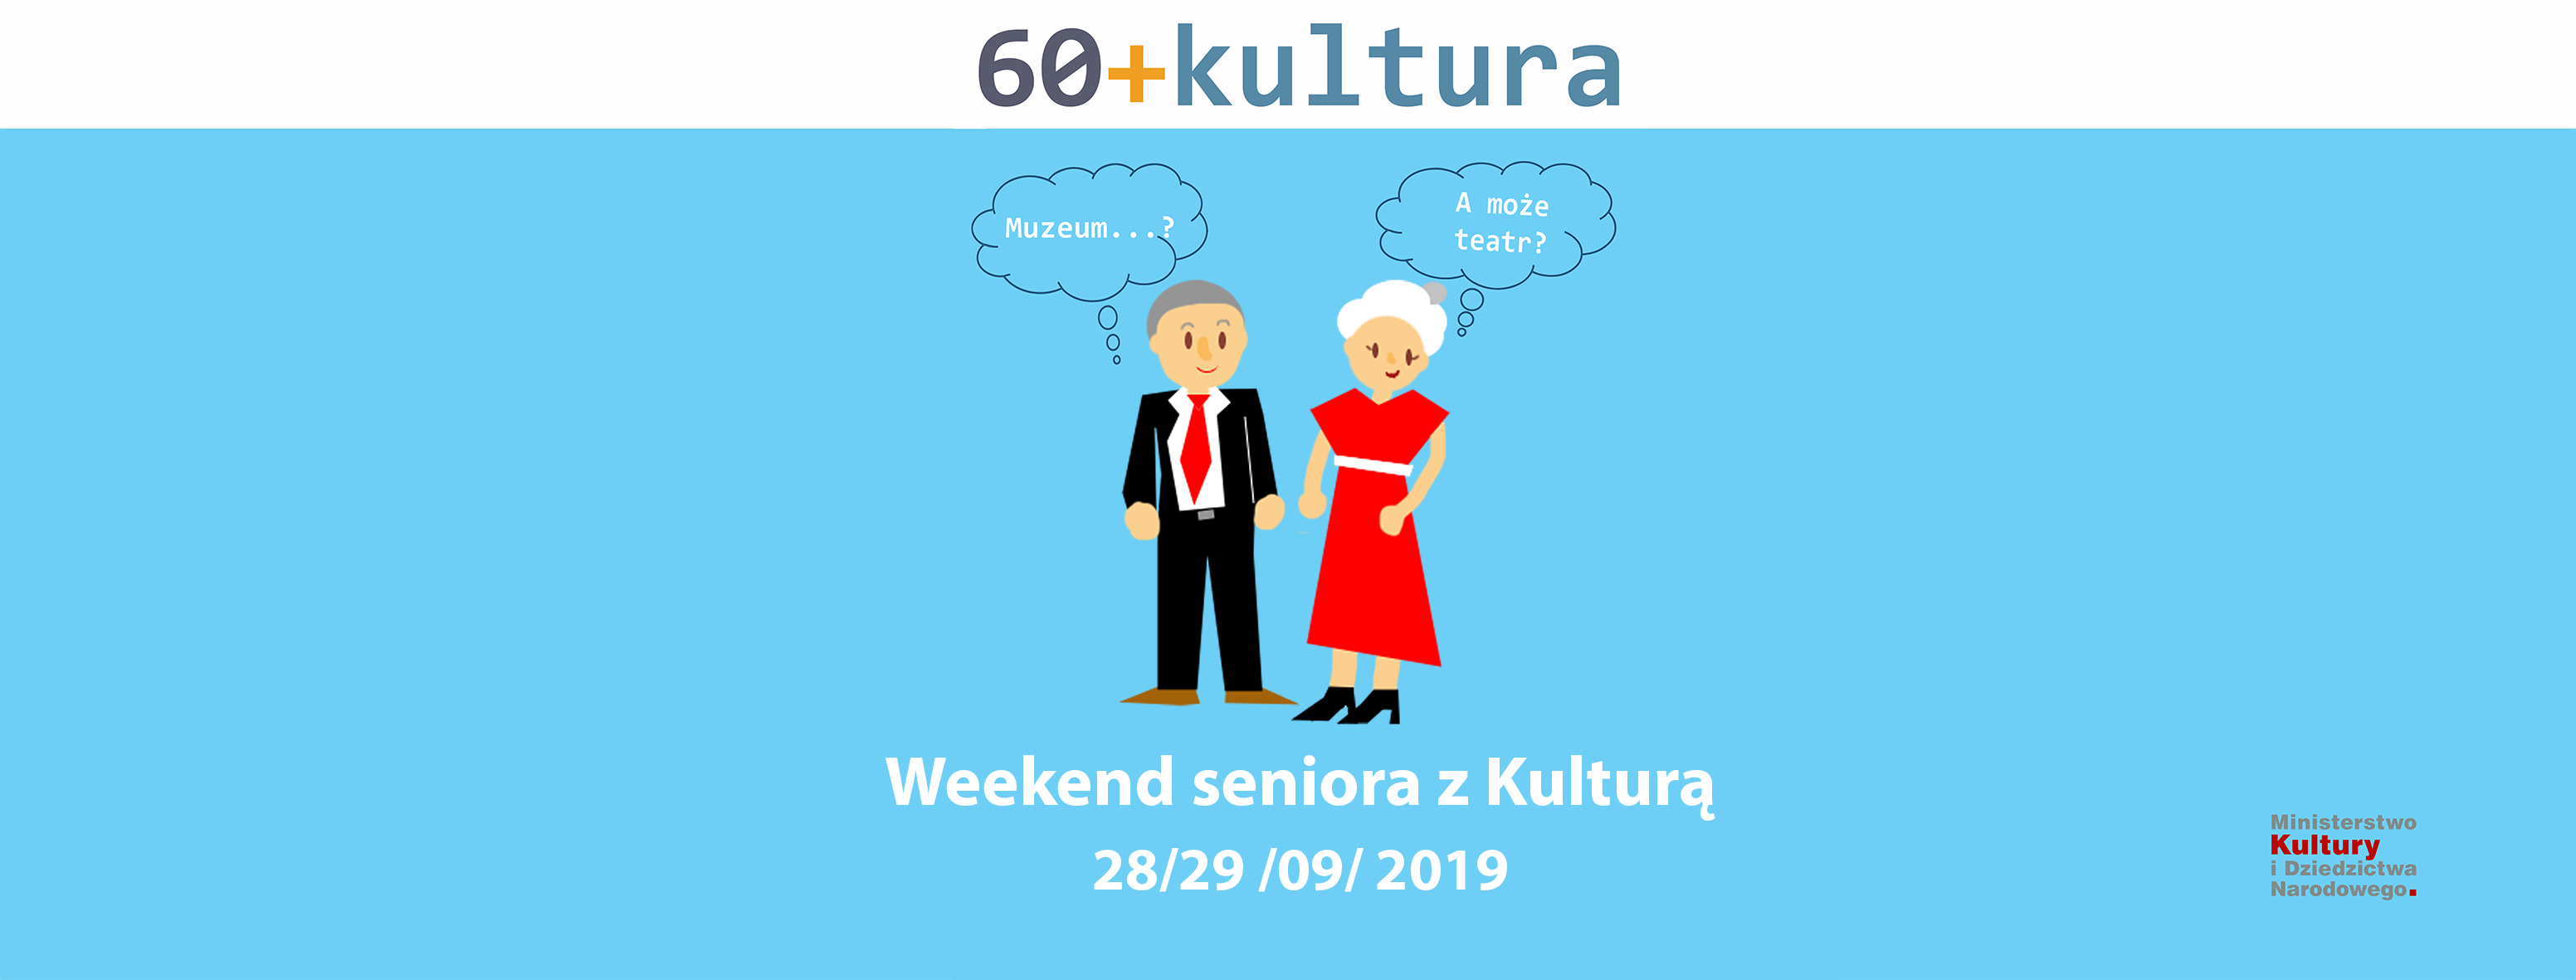 Weekend seniora z kulturą w BWA w Kielcach - 